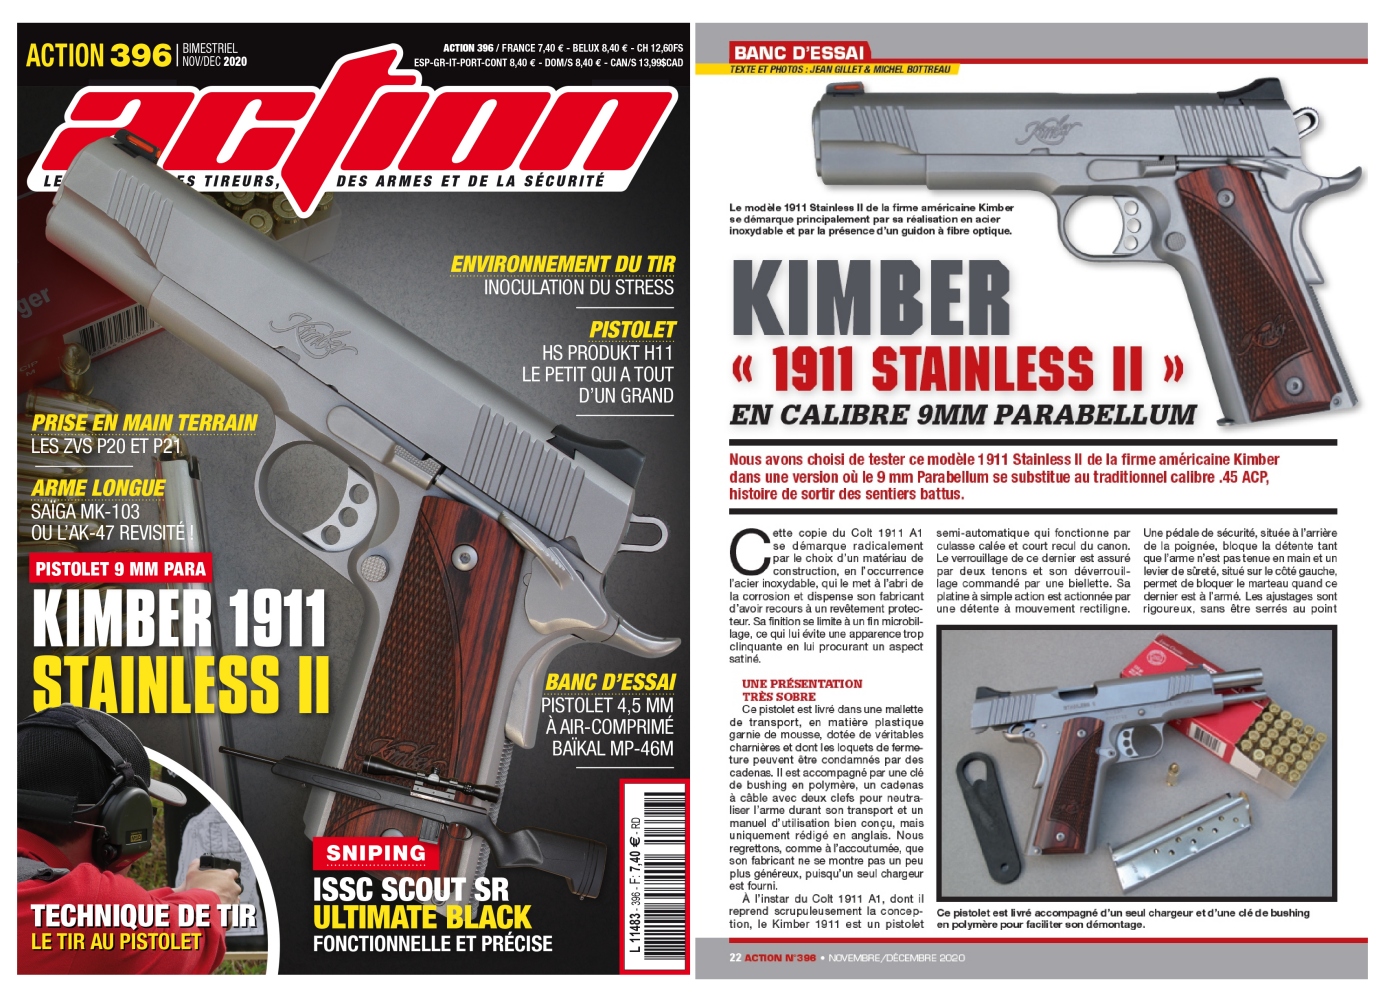 Le banc d’essai du pistolet Kimber Stainless II en calibre 9mm Parabellum a été publié sur 6 pages dans le magazine Action n°396 (novembre/décembre 2020).